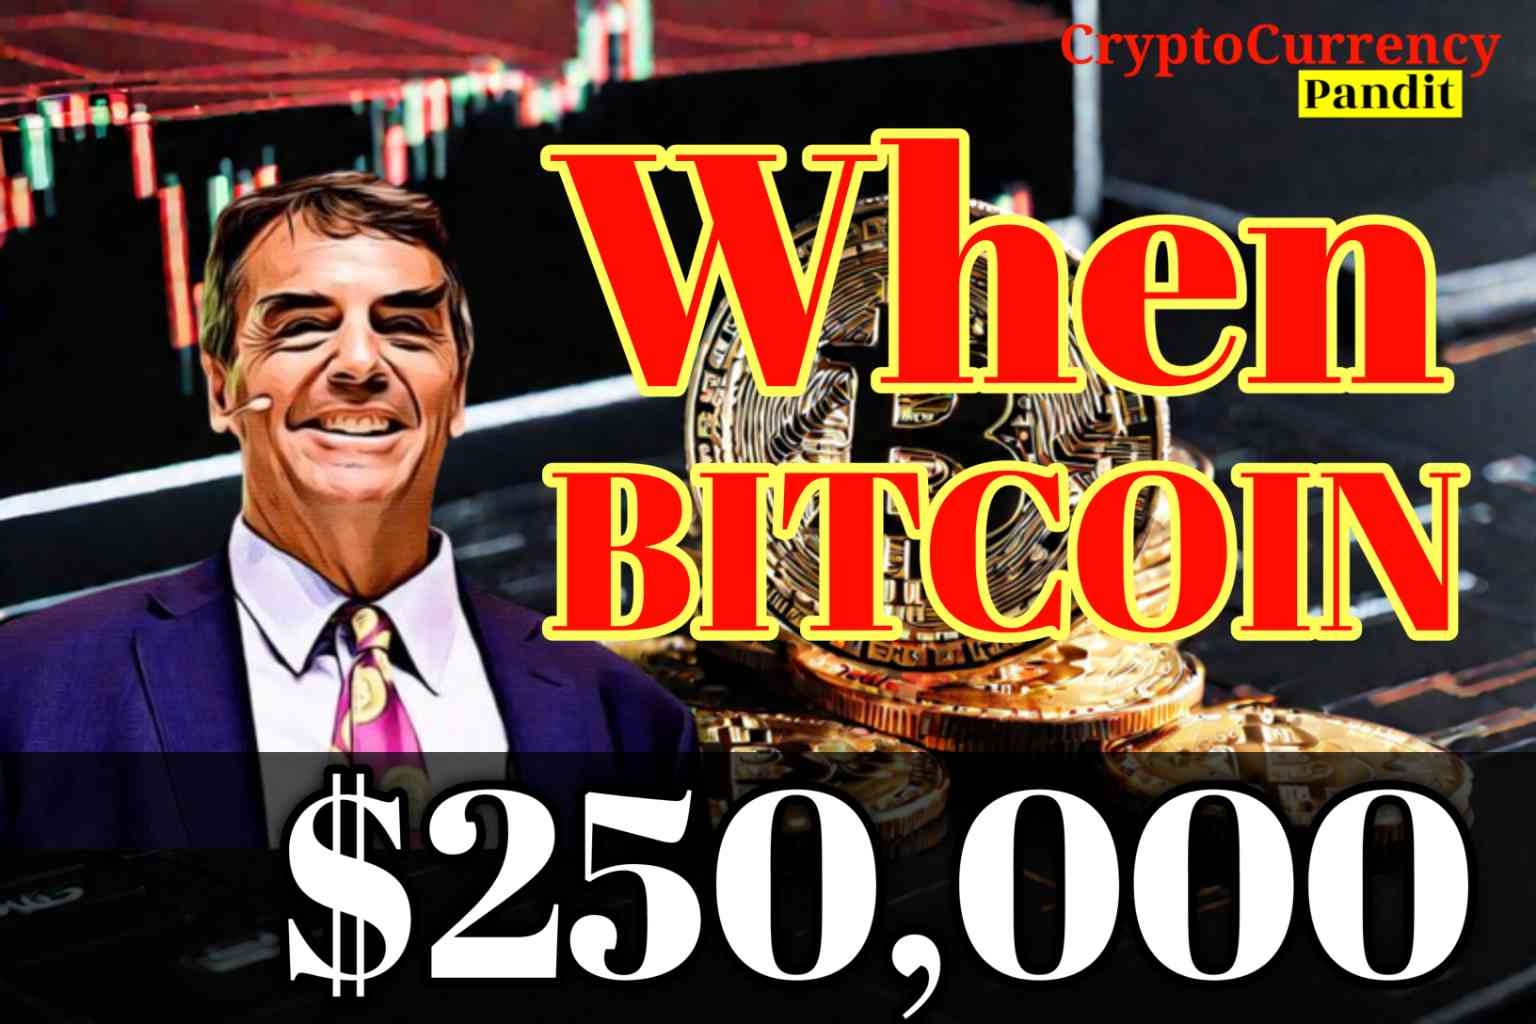 Who is Tim Draper? When will Bitcoin reach $250,000?